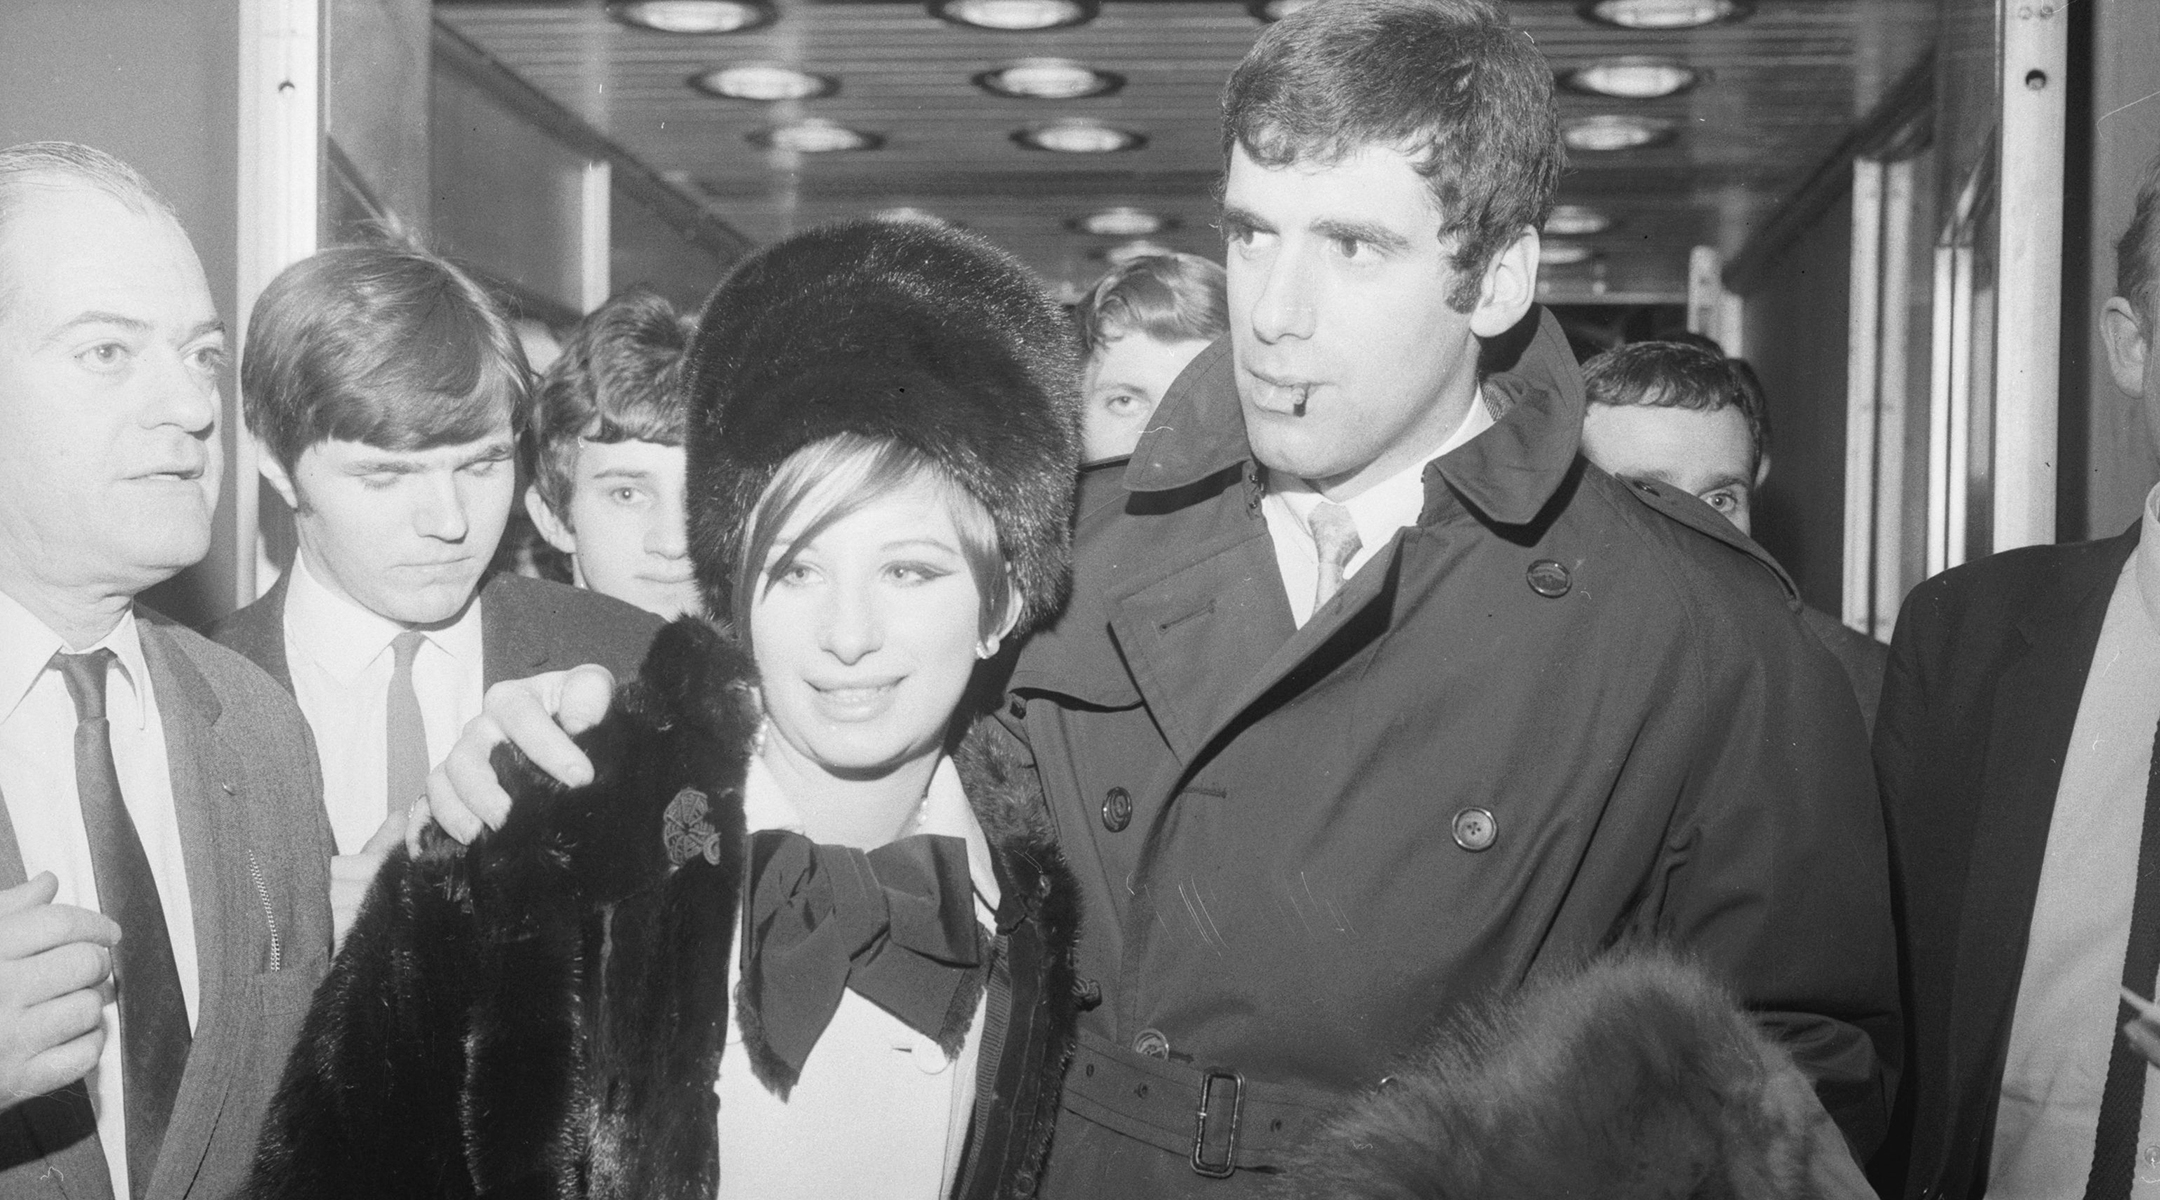 Barbra Streisand and Elliott Gould